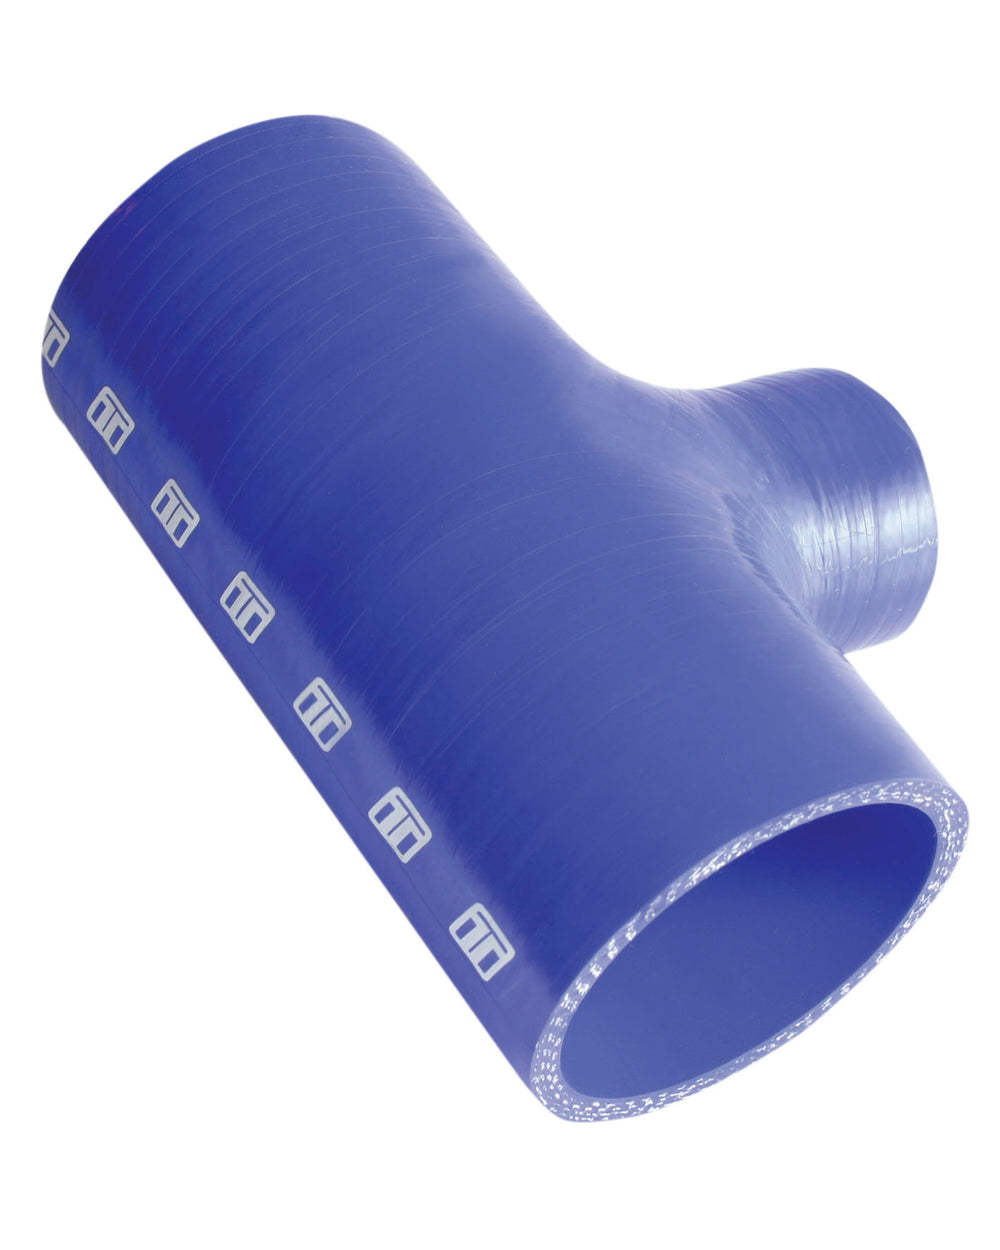 Turbosmart Intercooler Hose Kit (Hose Tee 3.00" ID 1.5" spout - Blue)